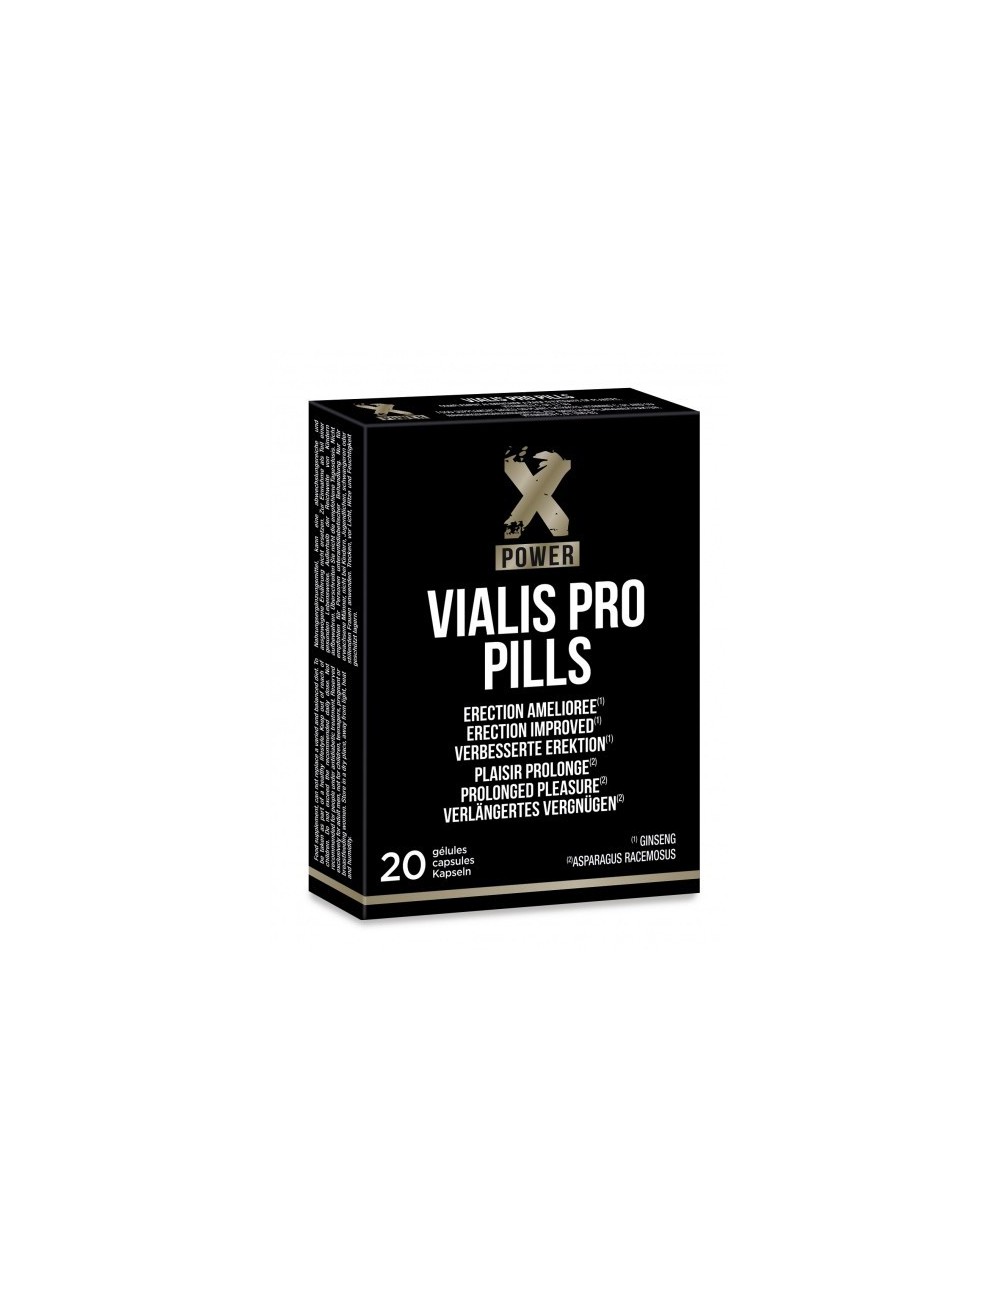 Vialis Pro pills - 20 gélules